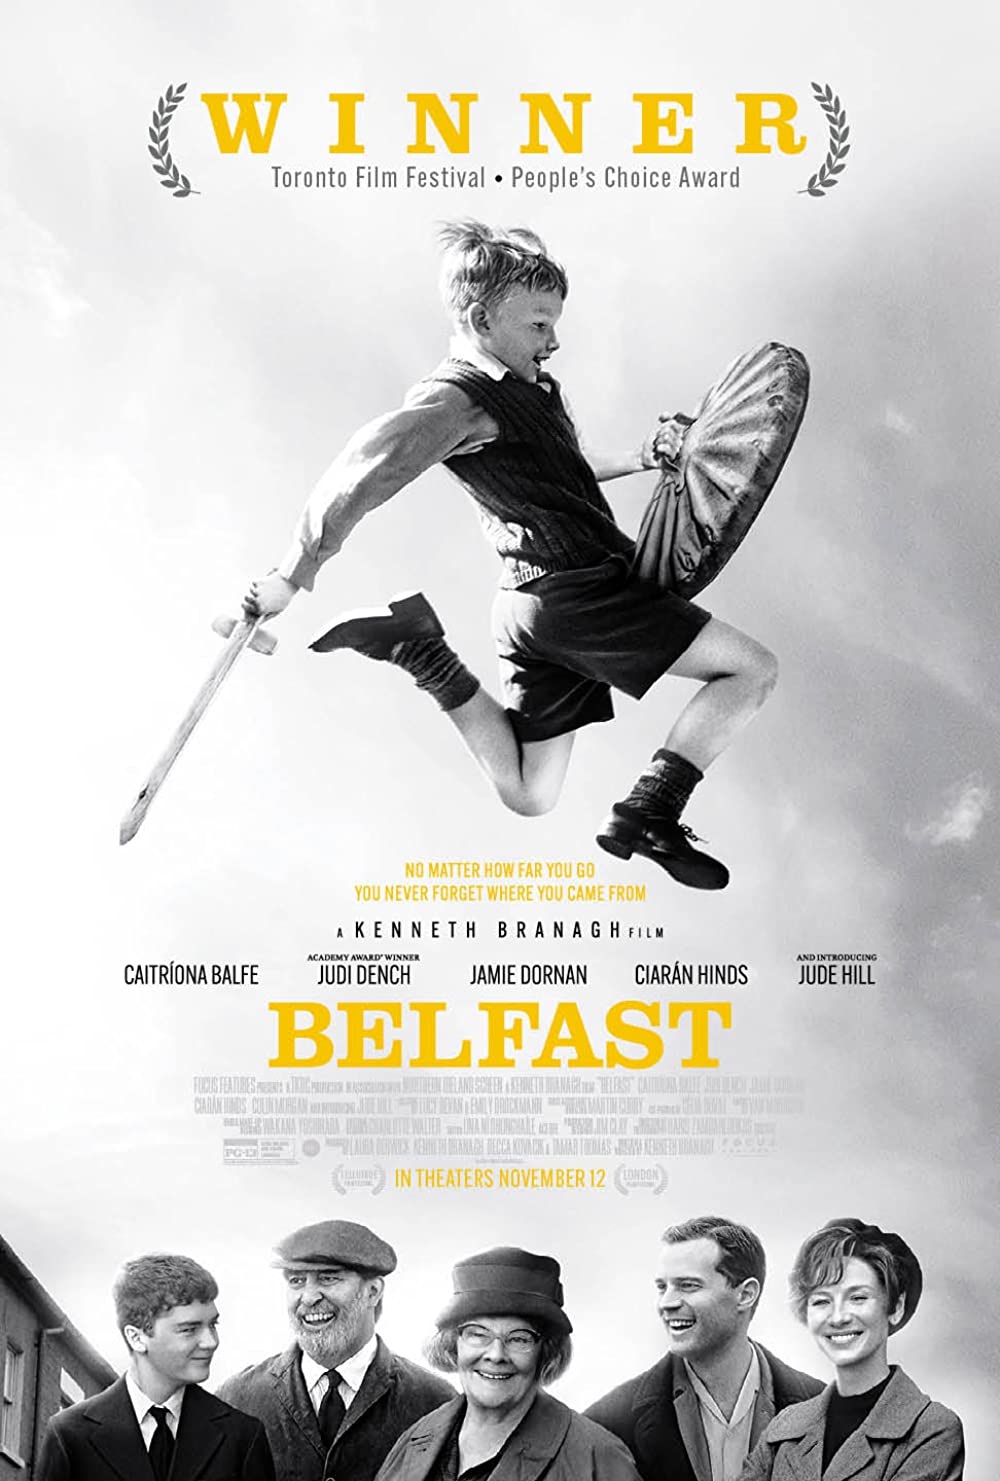 Cover Art for "Belfast"